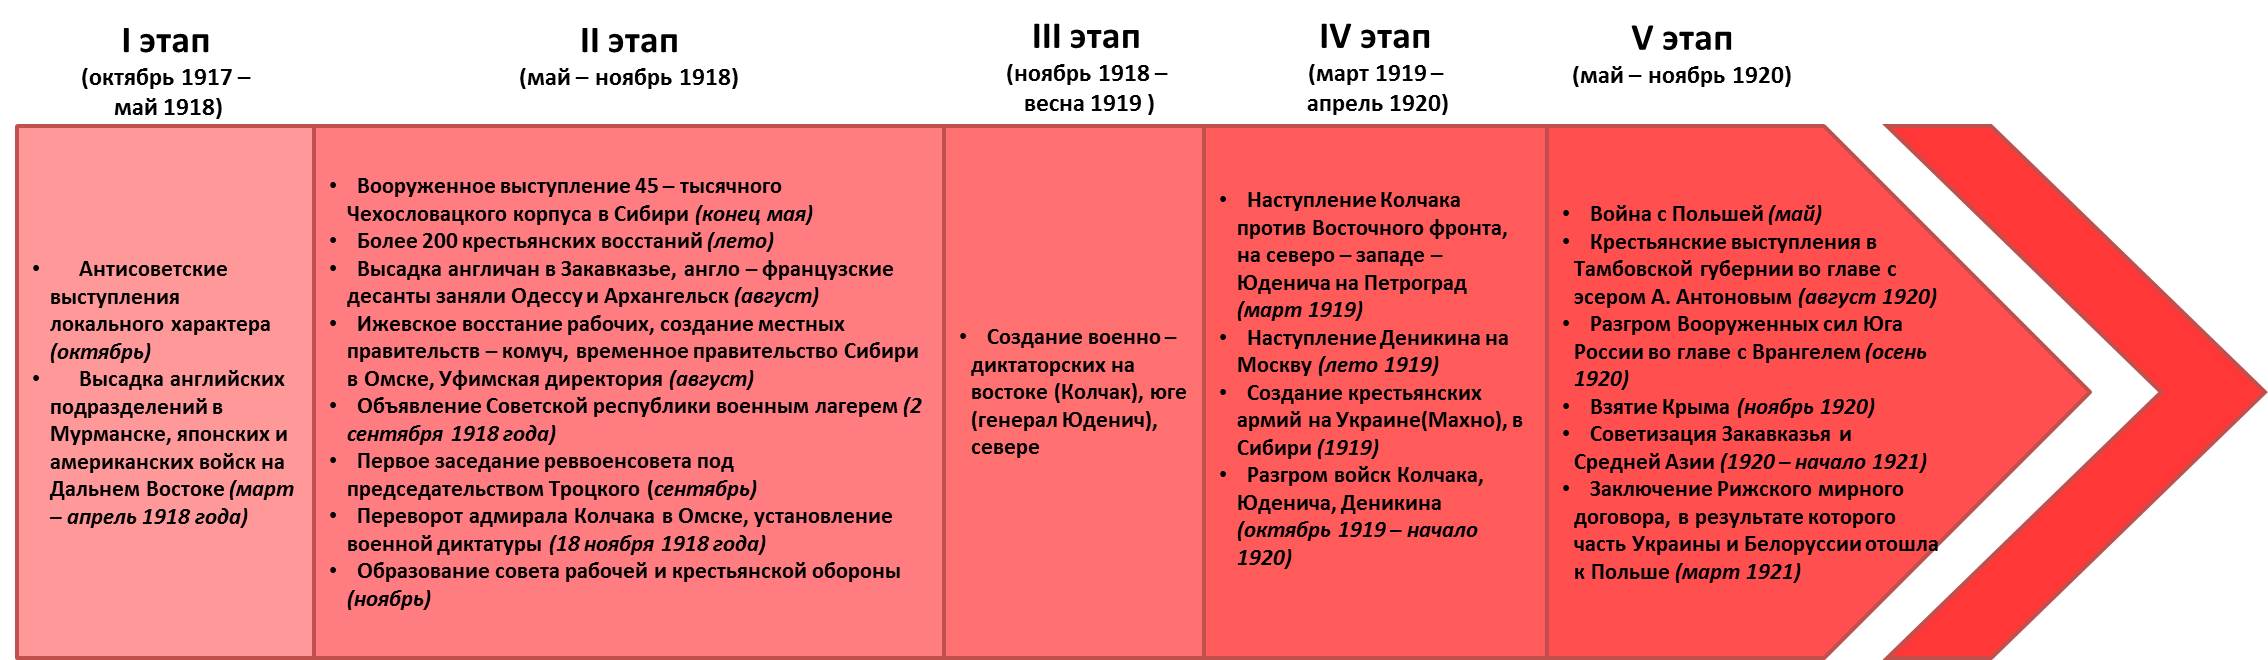 Хронология событий Гражданской войны в России